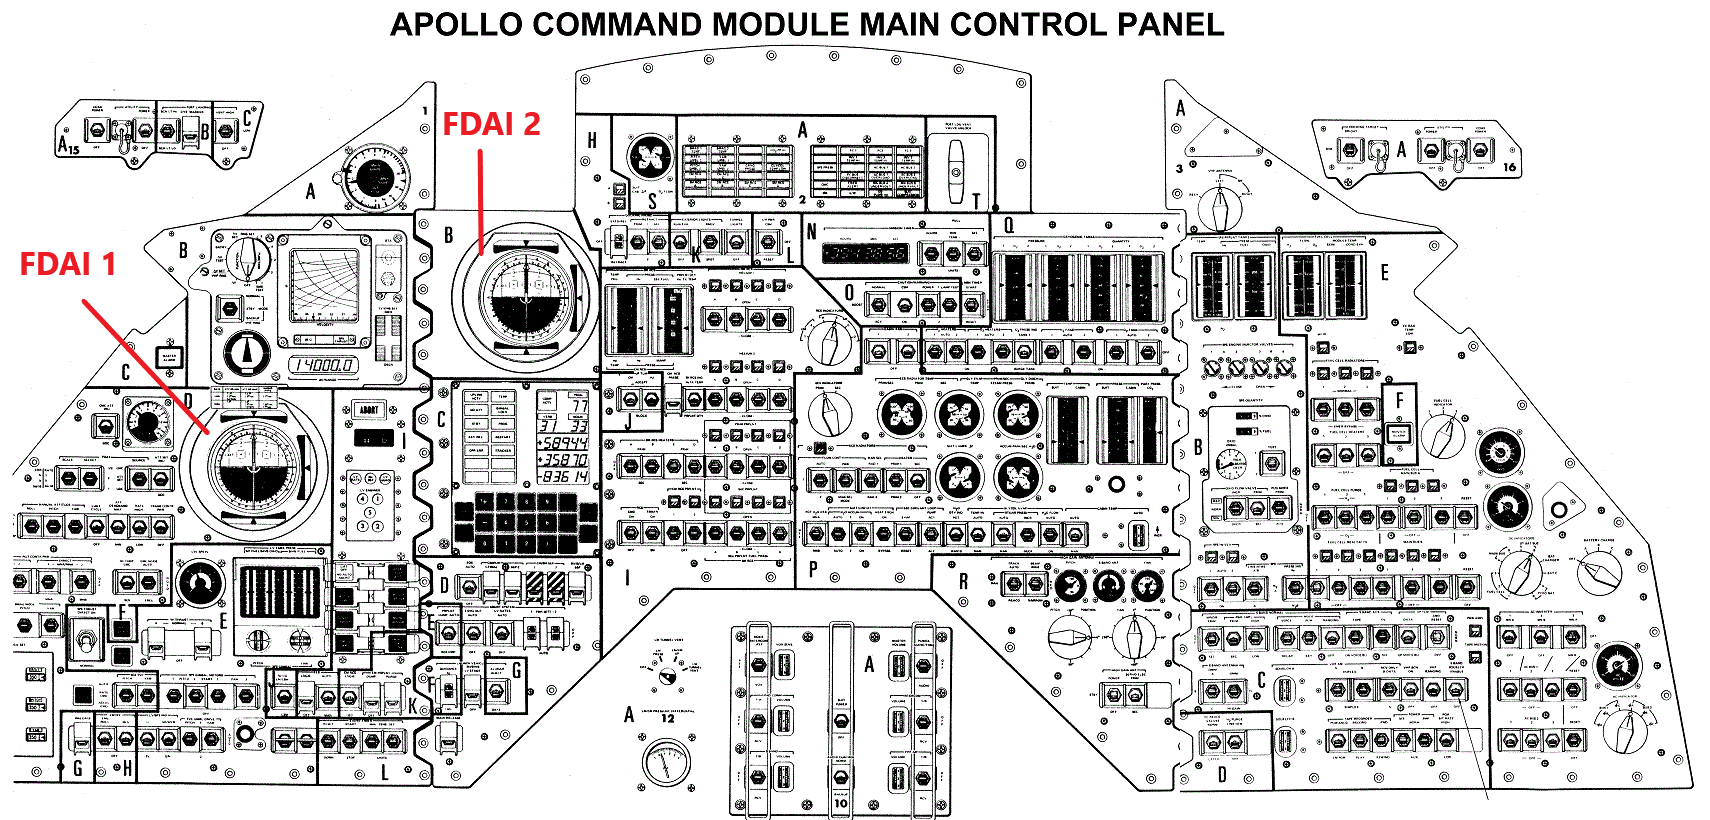 schéma du panneau de commande du module apollo 12